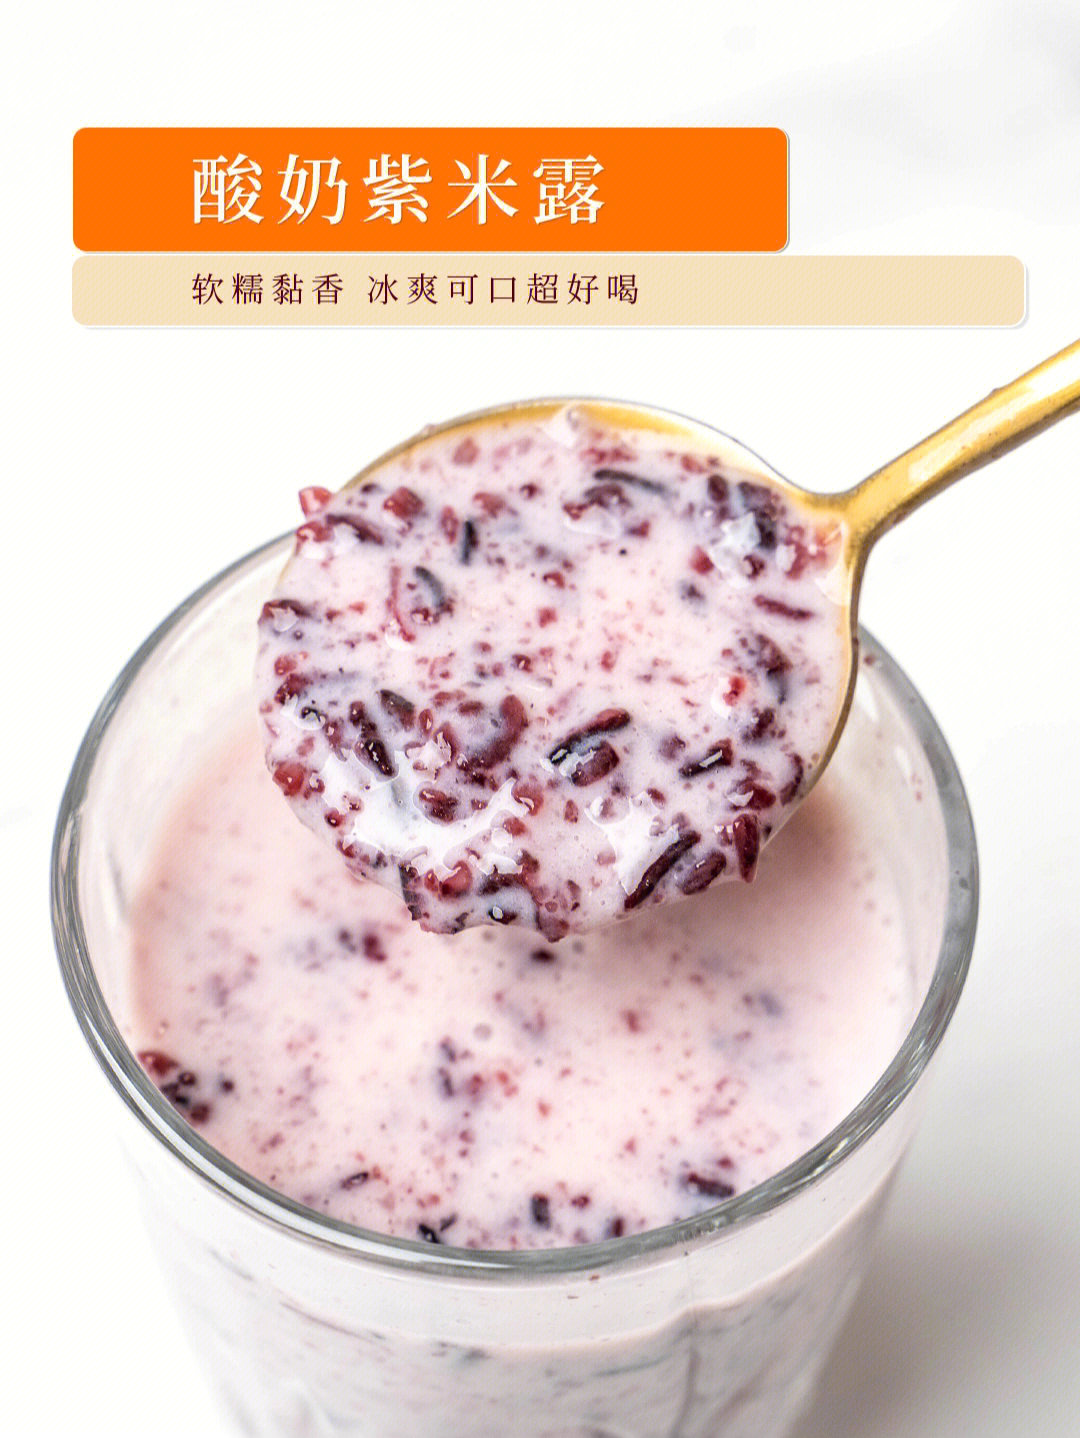 玫瑰酸奶紫米露图片